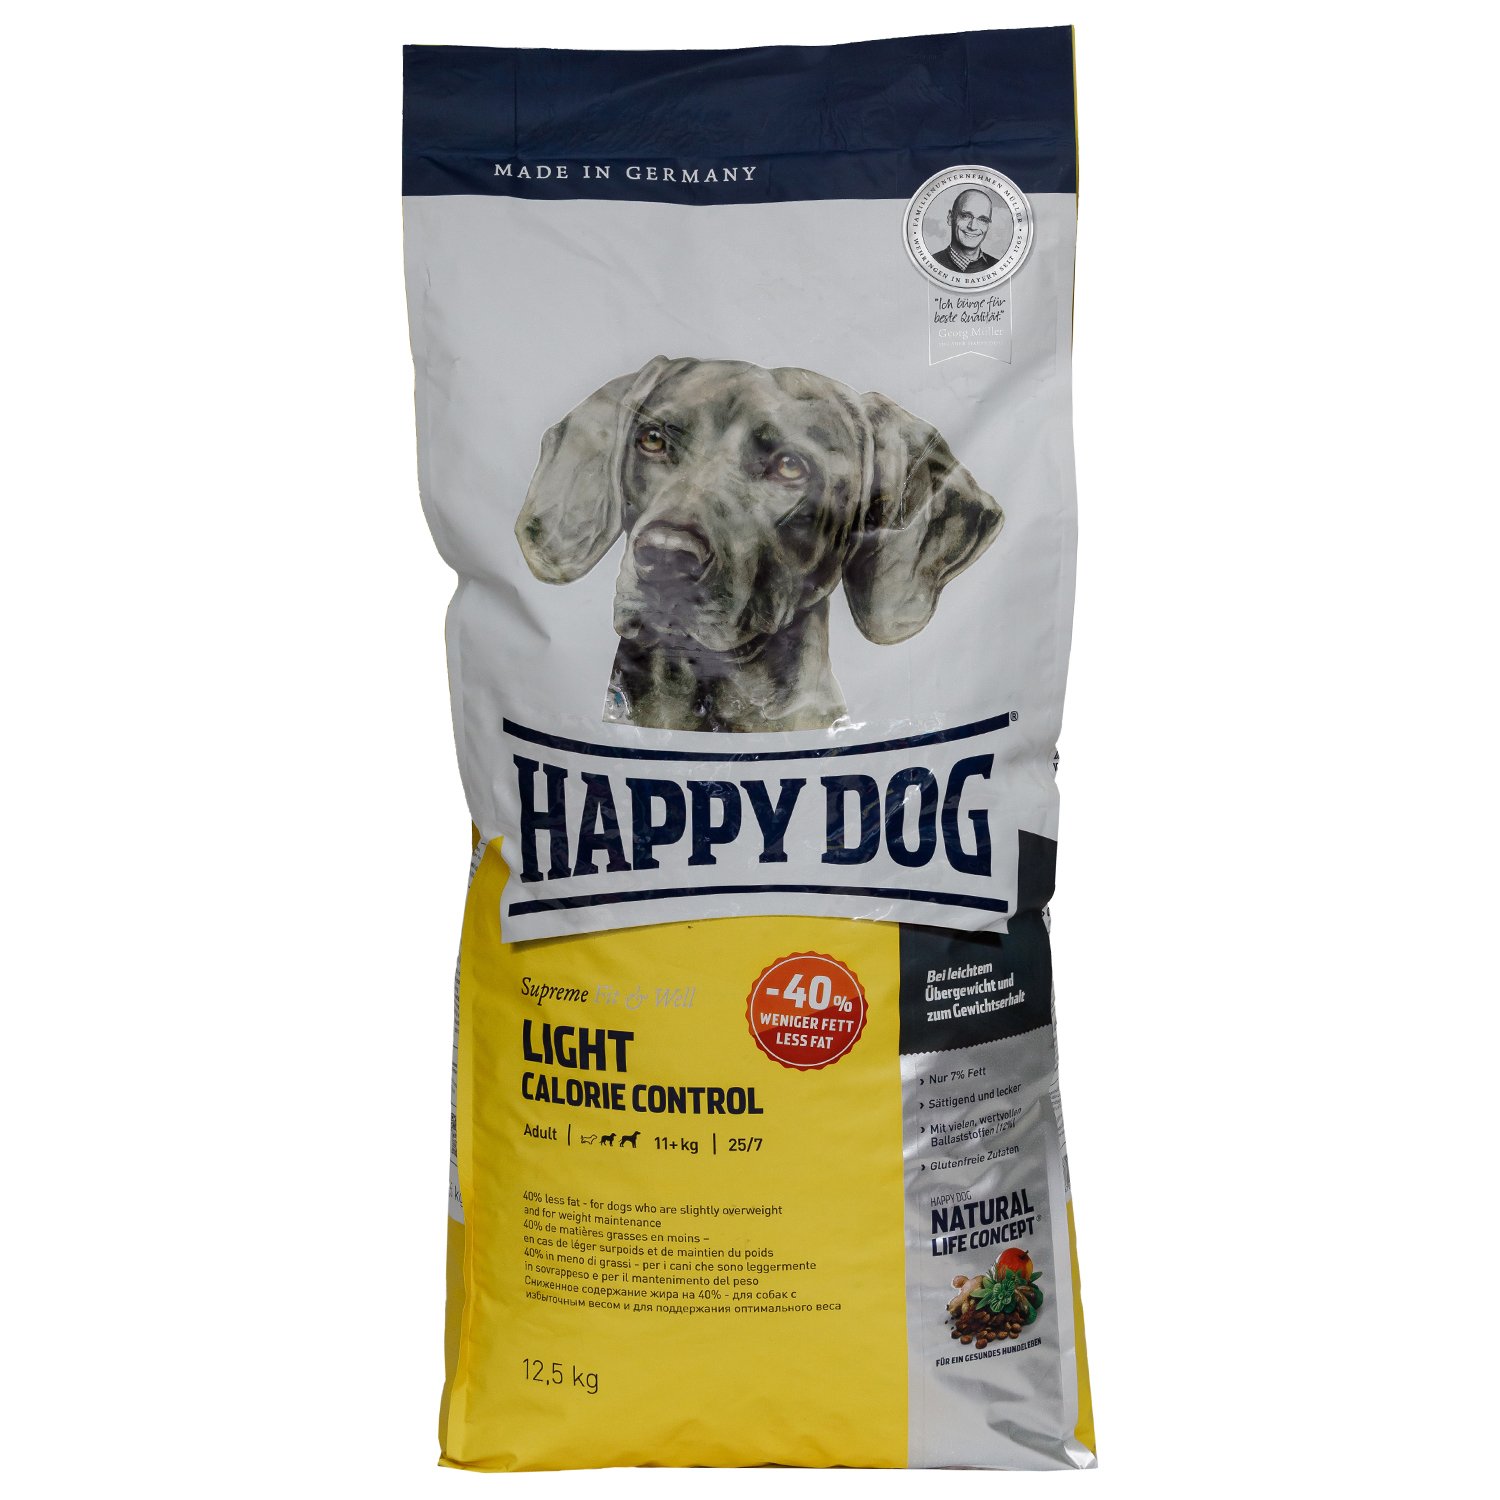 Хэппи дог (happy dog): состав, ассортимент и стоимость продукции